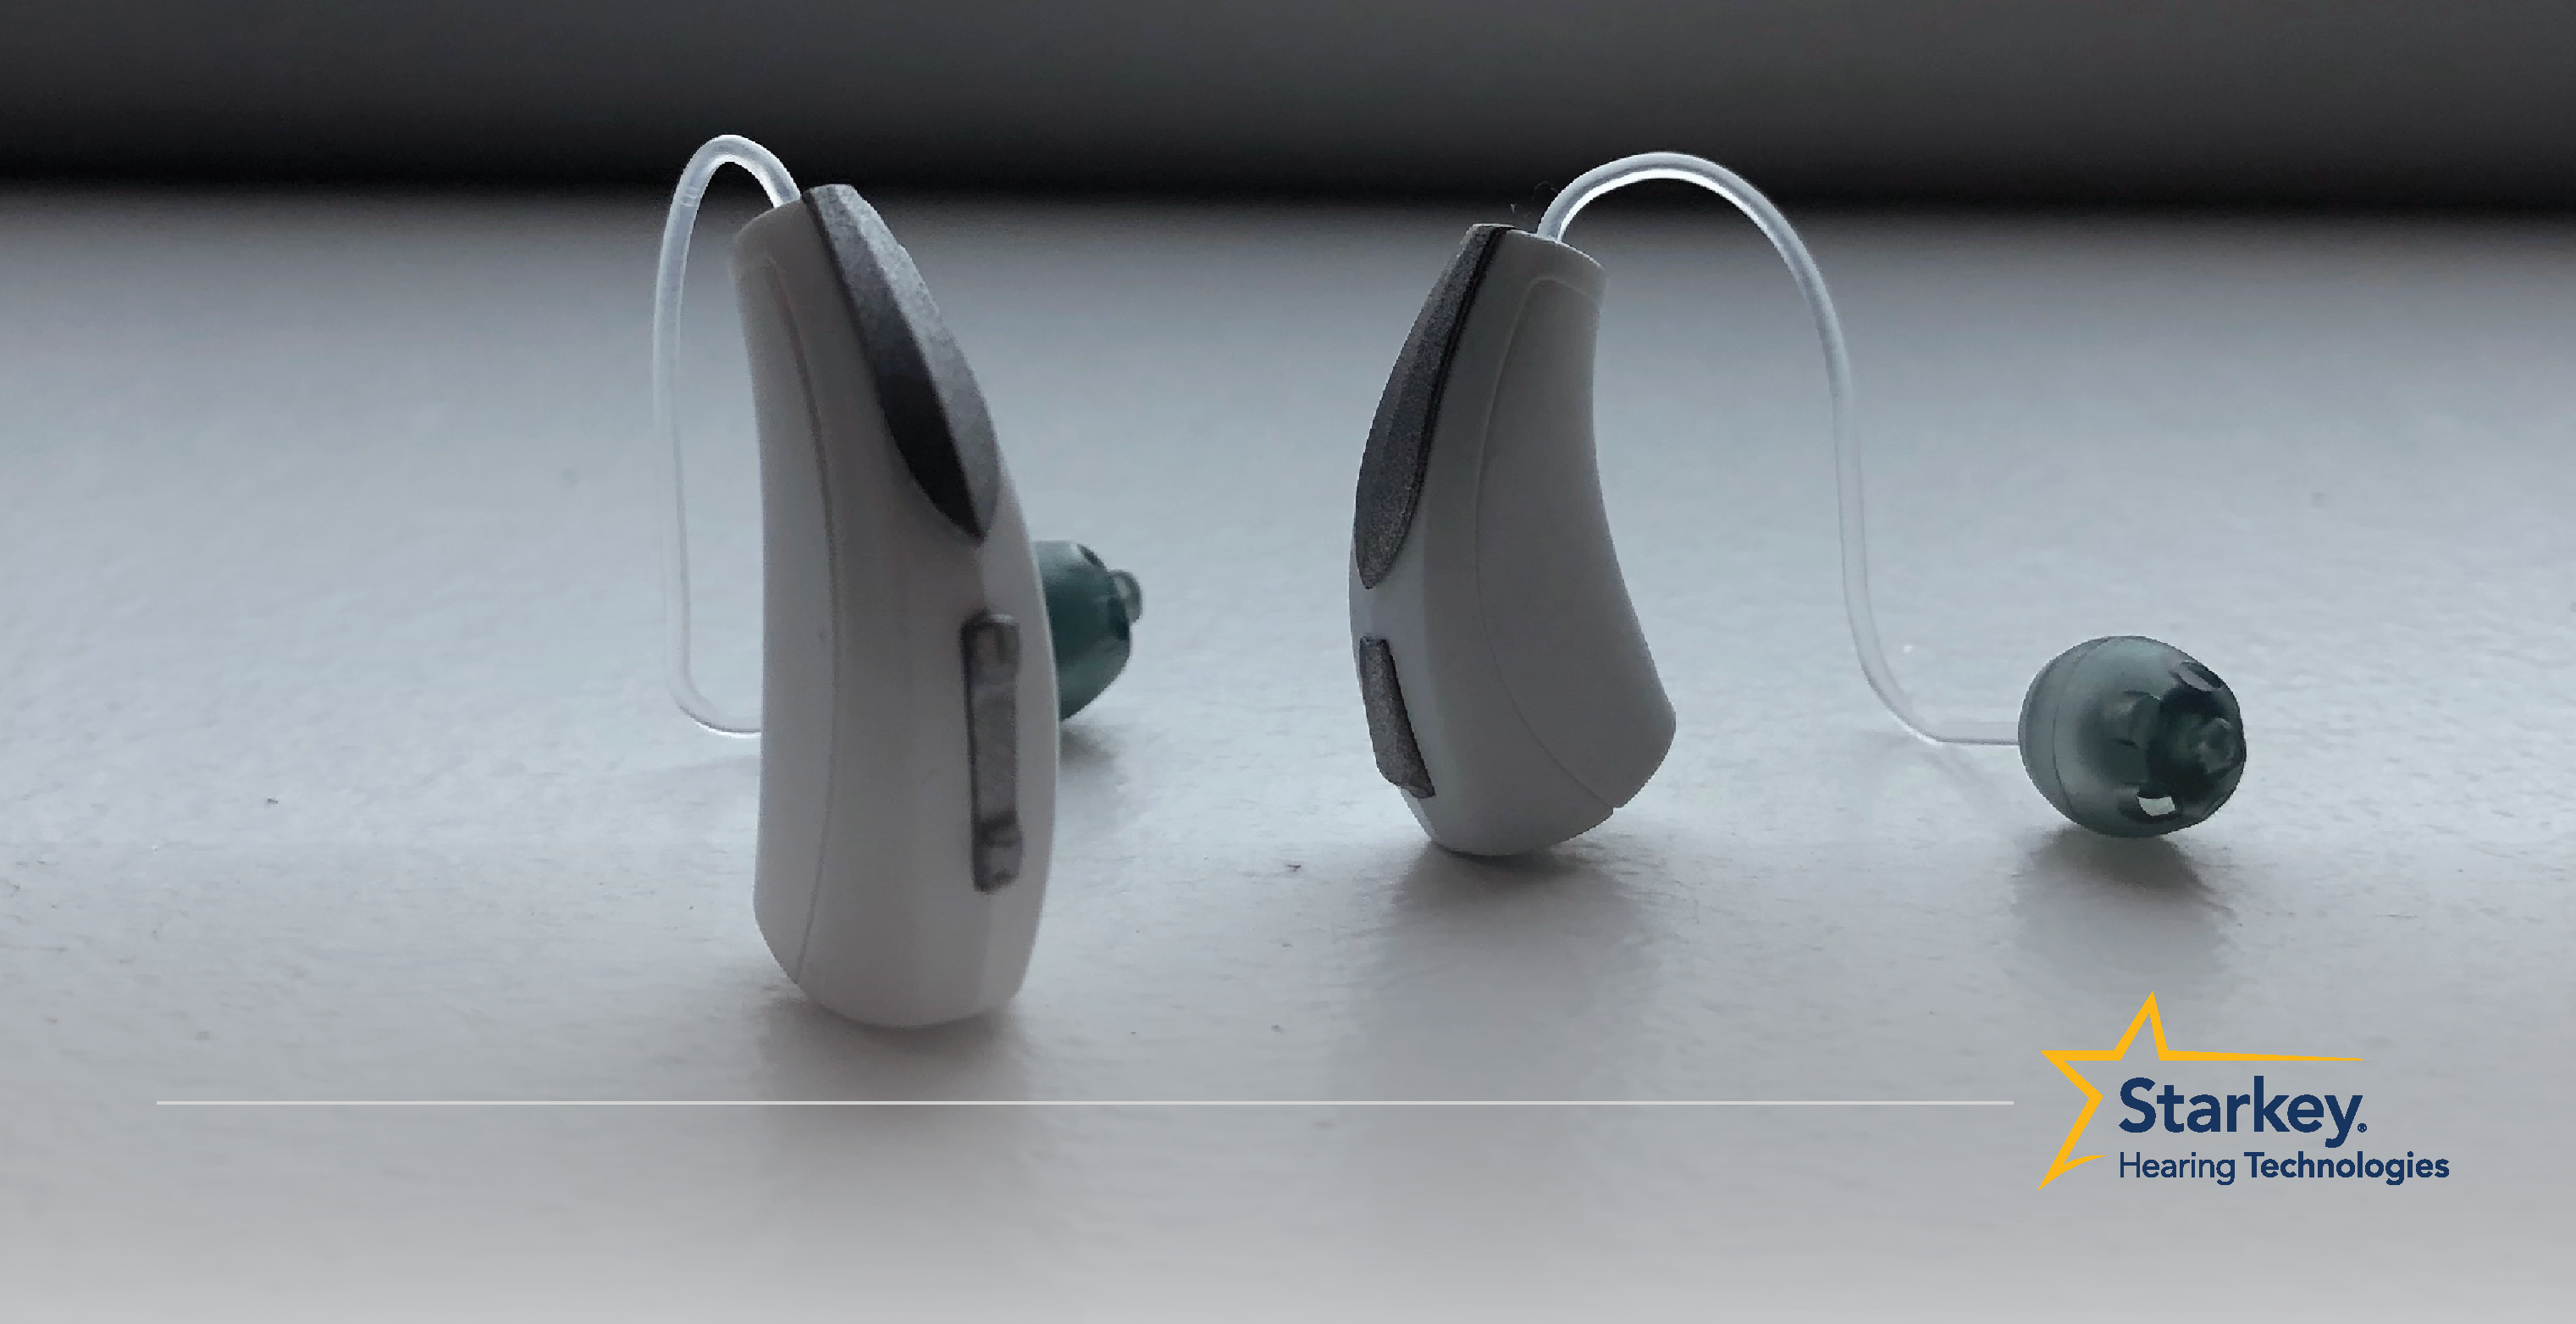 Aide auditive récepteur-dans-canal blanche directement à côté d'une aide auditive mini récepteur-dans-canal tournée sur le côté sur une surface blanche